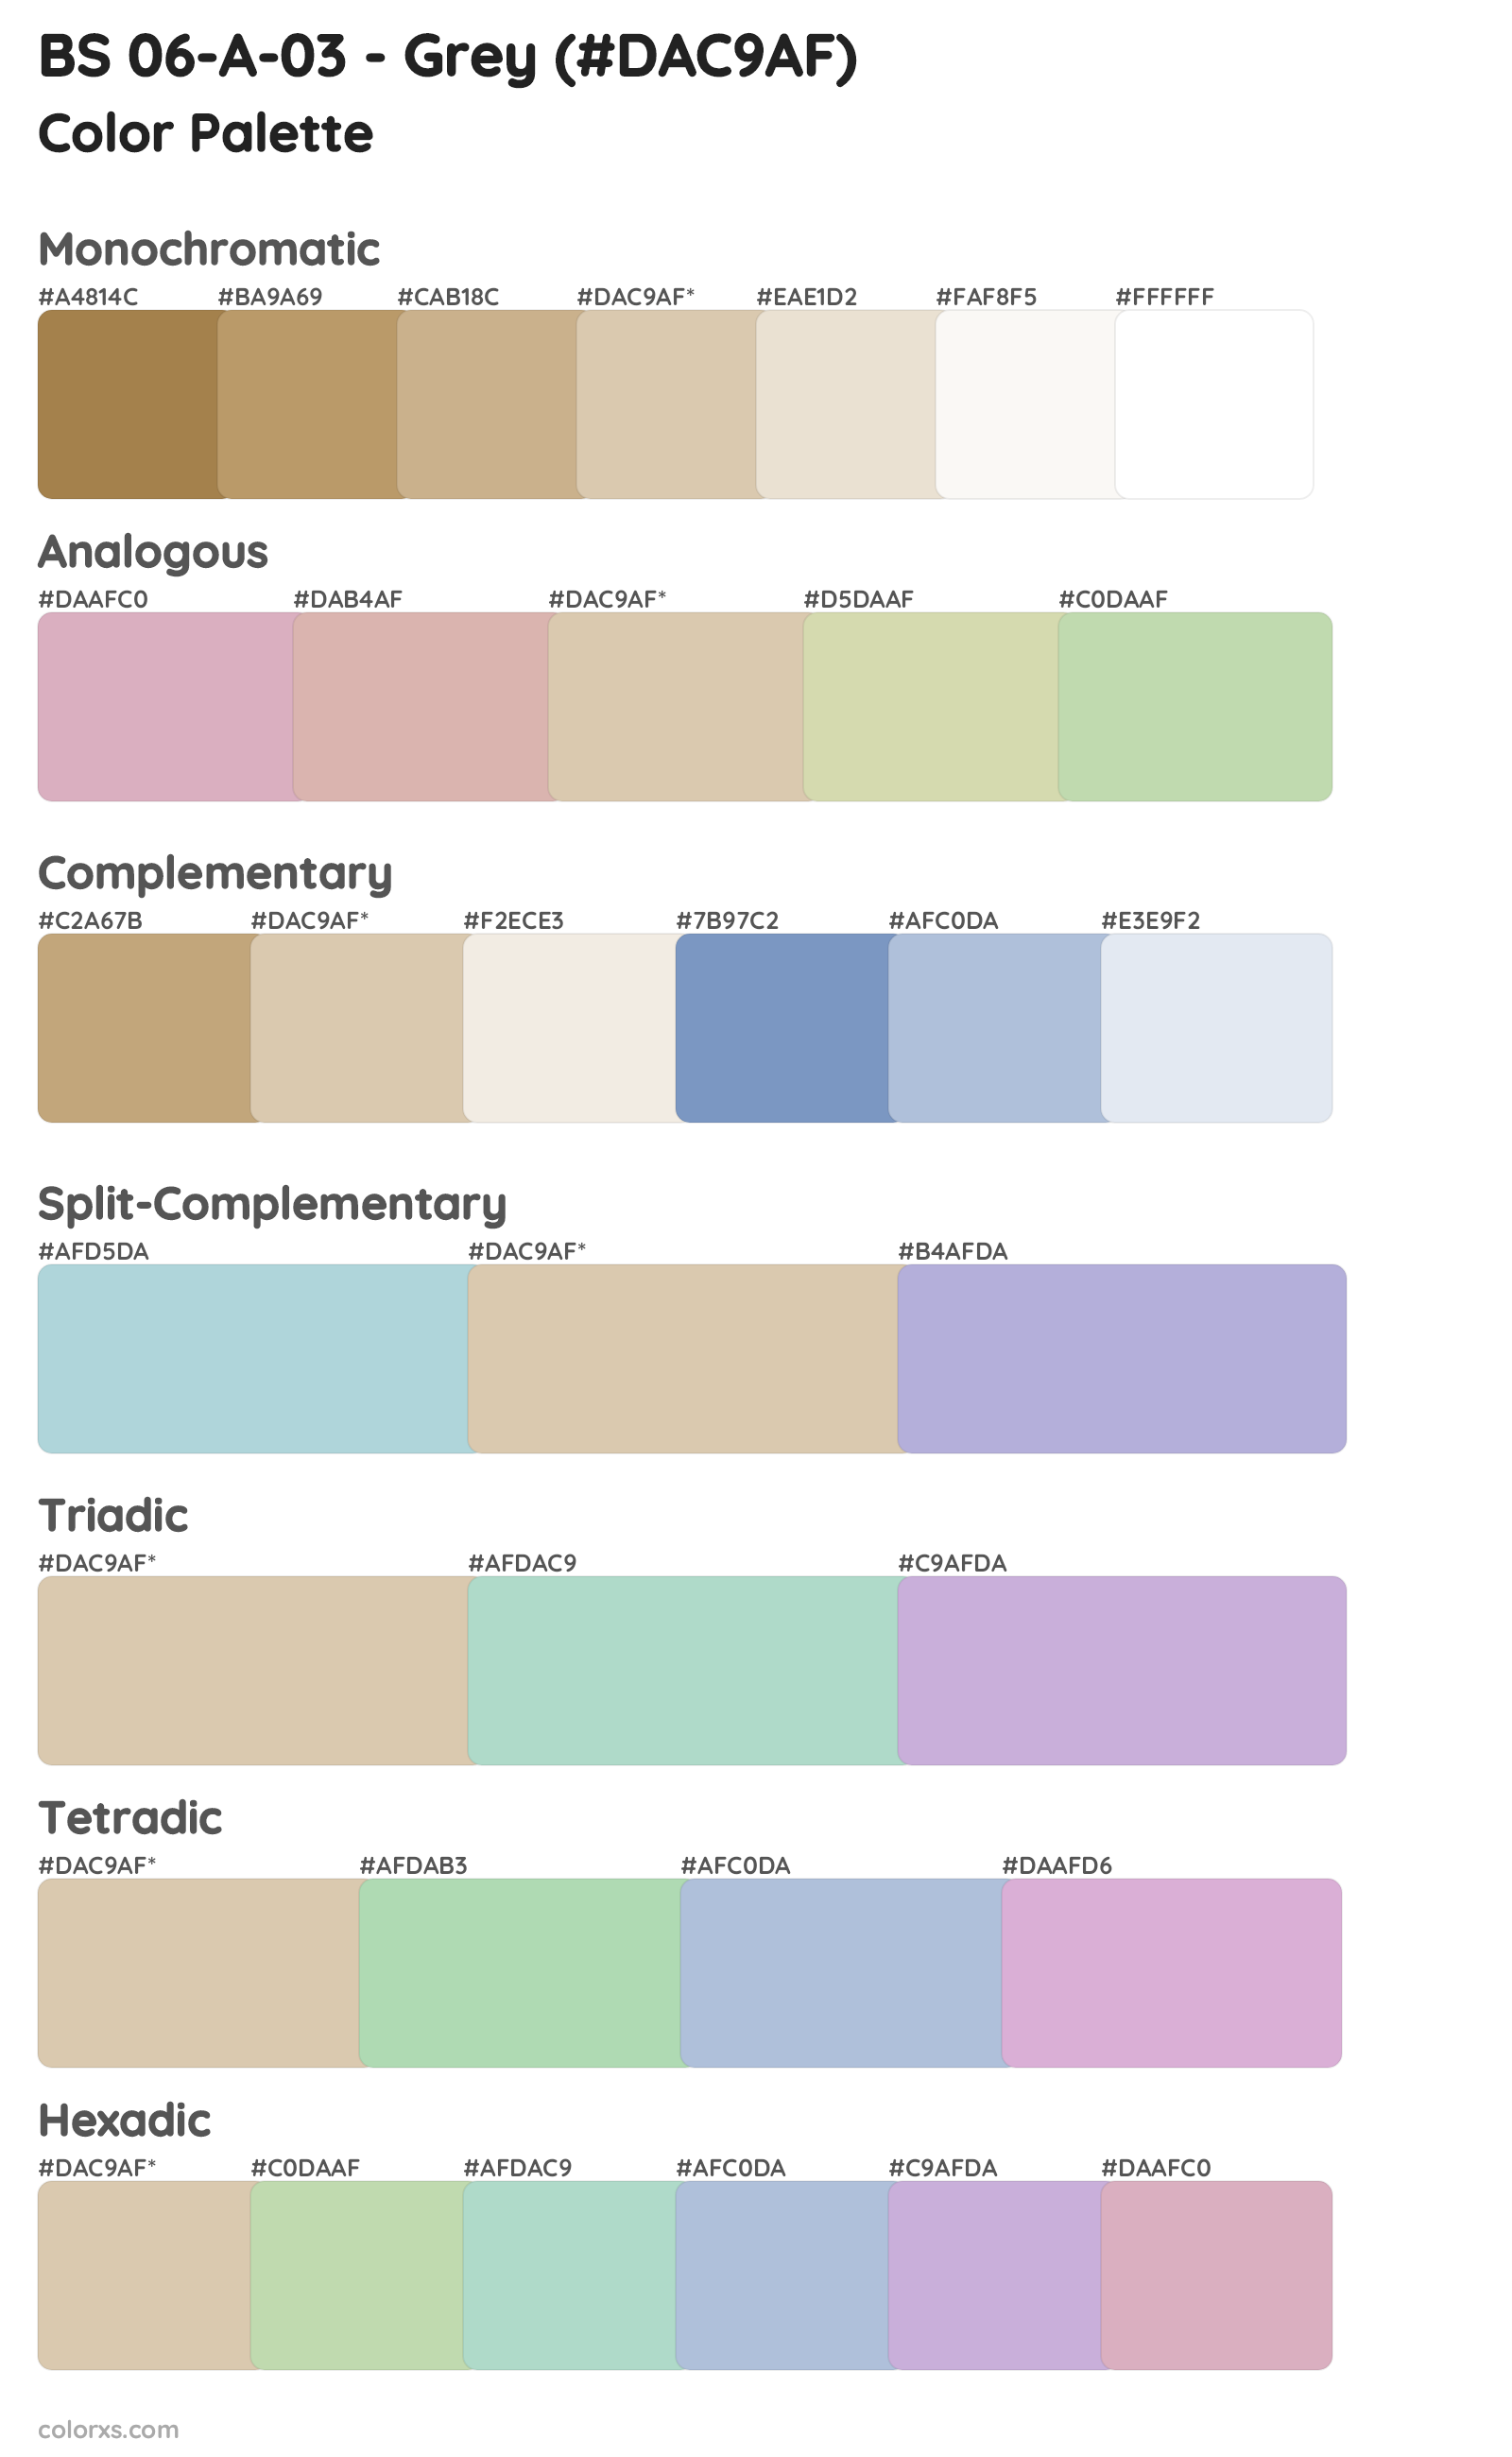 BS 06-A-03 - Grey Color Scheme Palettes